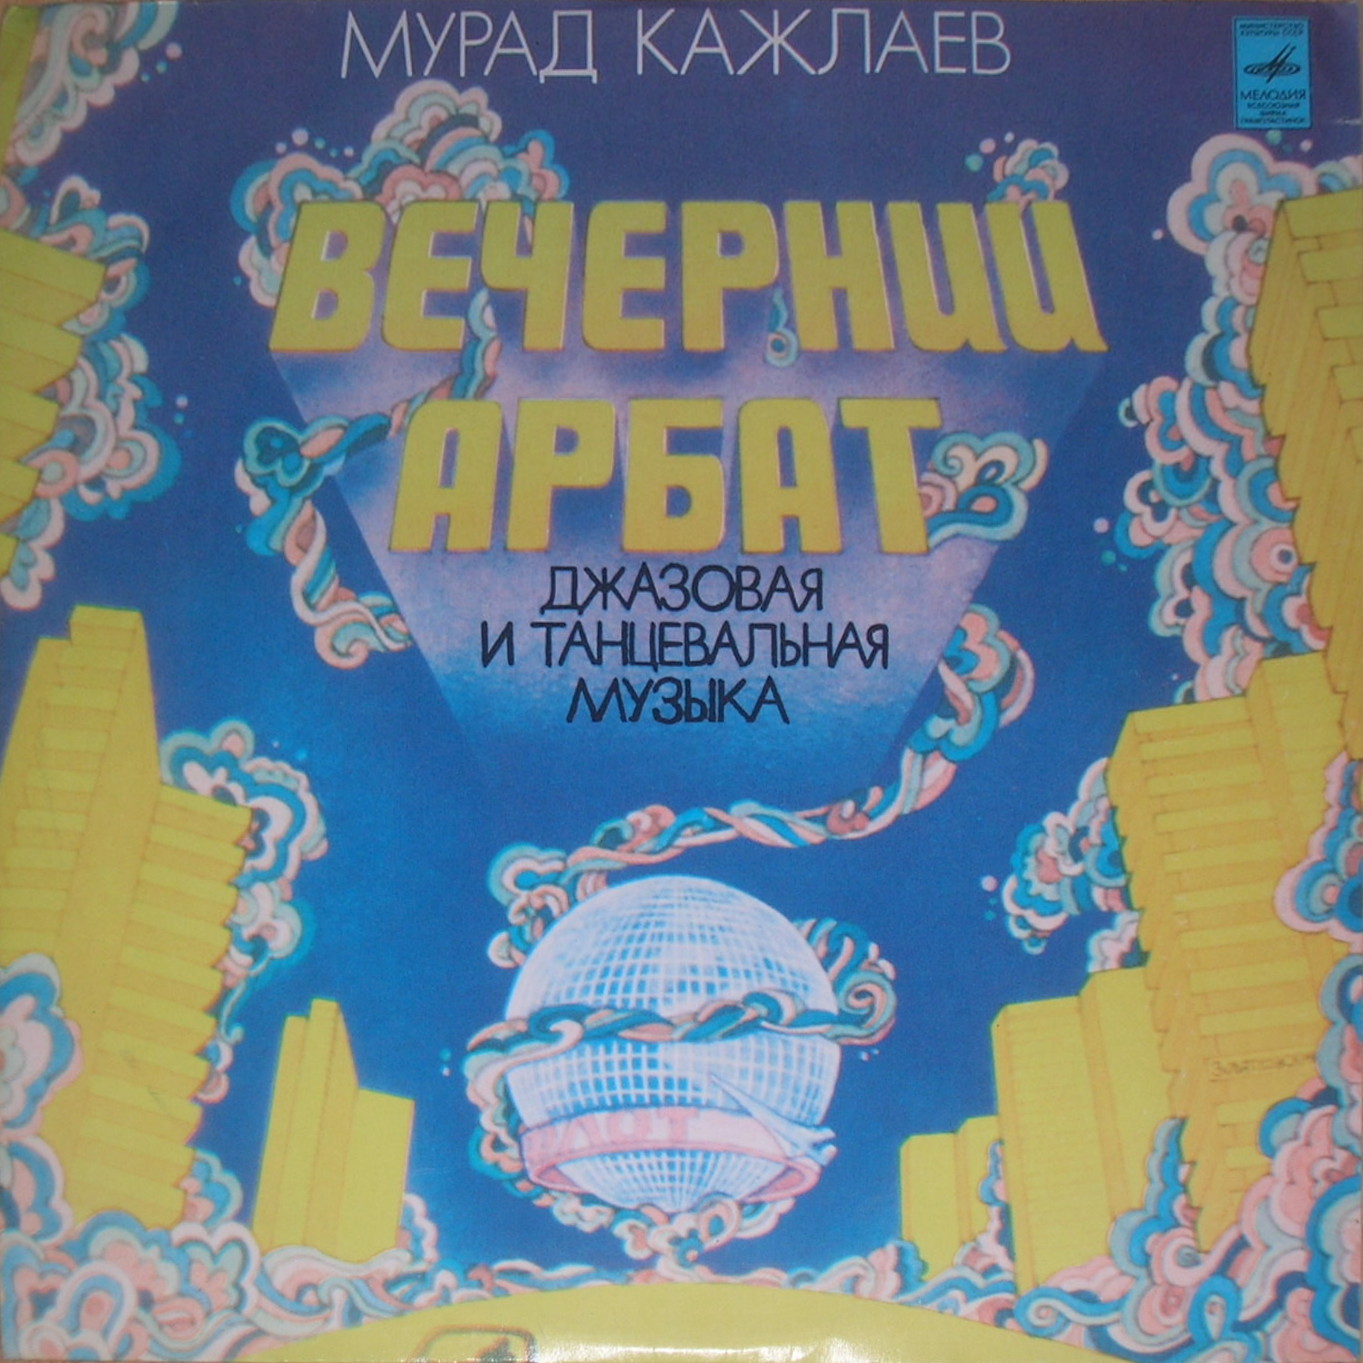 Мурад КАЖЛАЕВ: "Вечерний Арбат": джазовая и танцевальная музыка